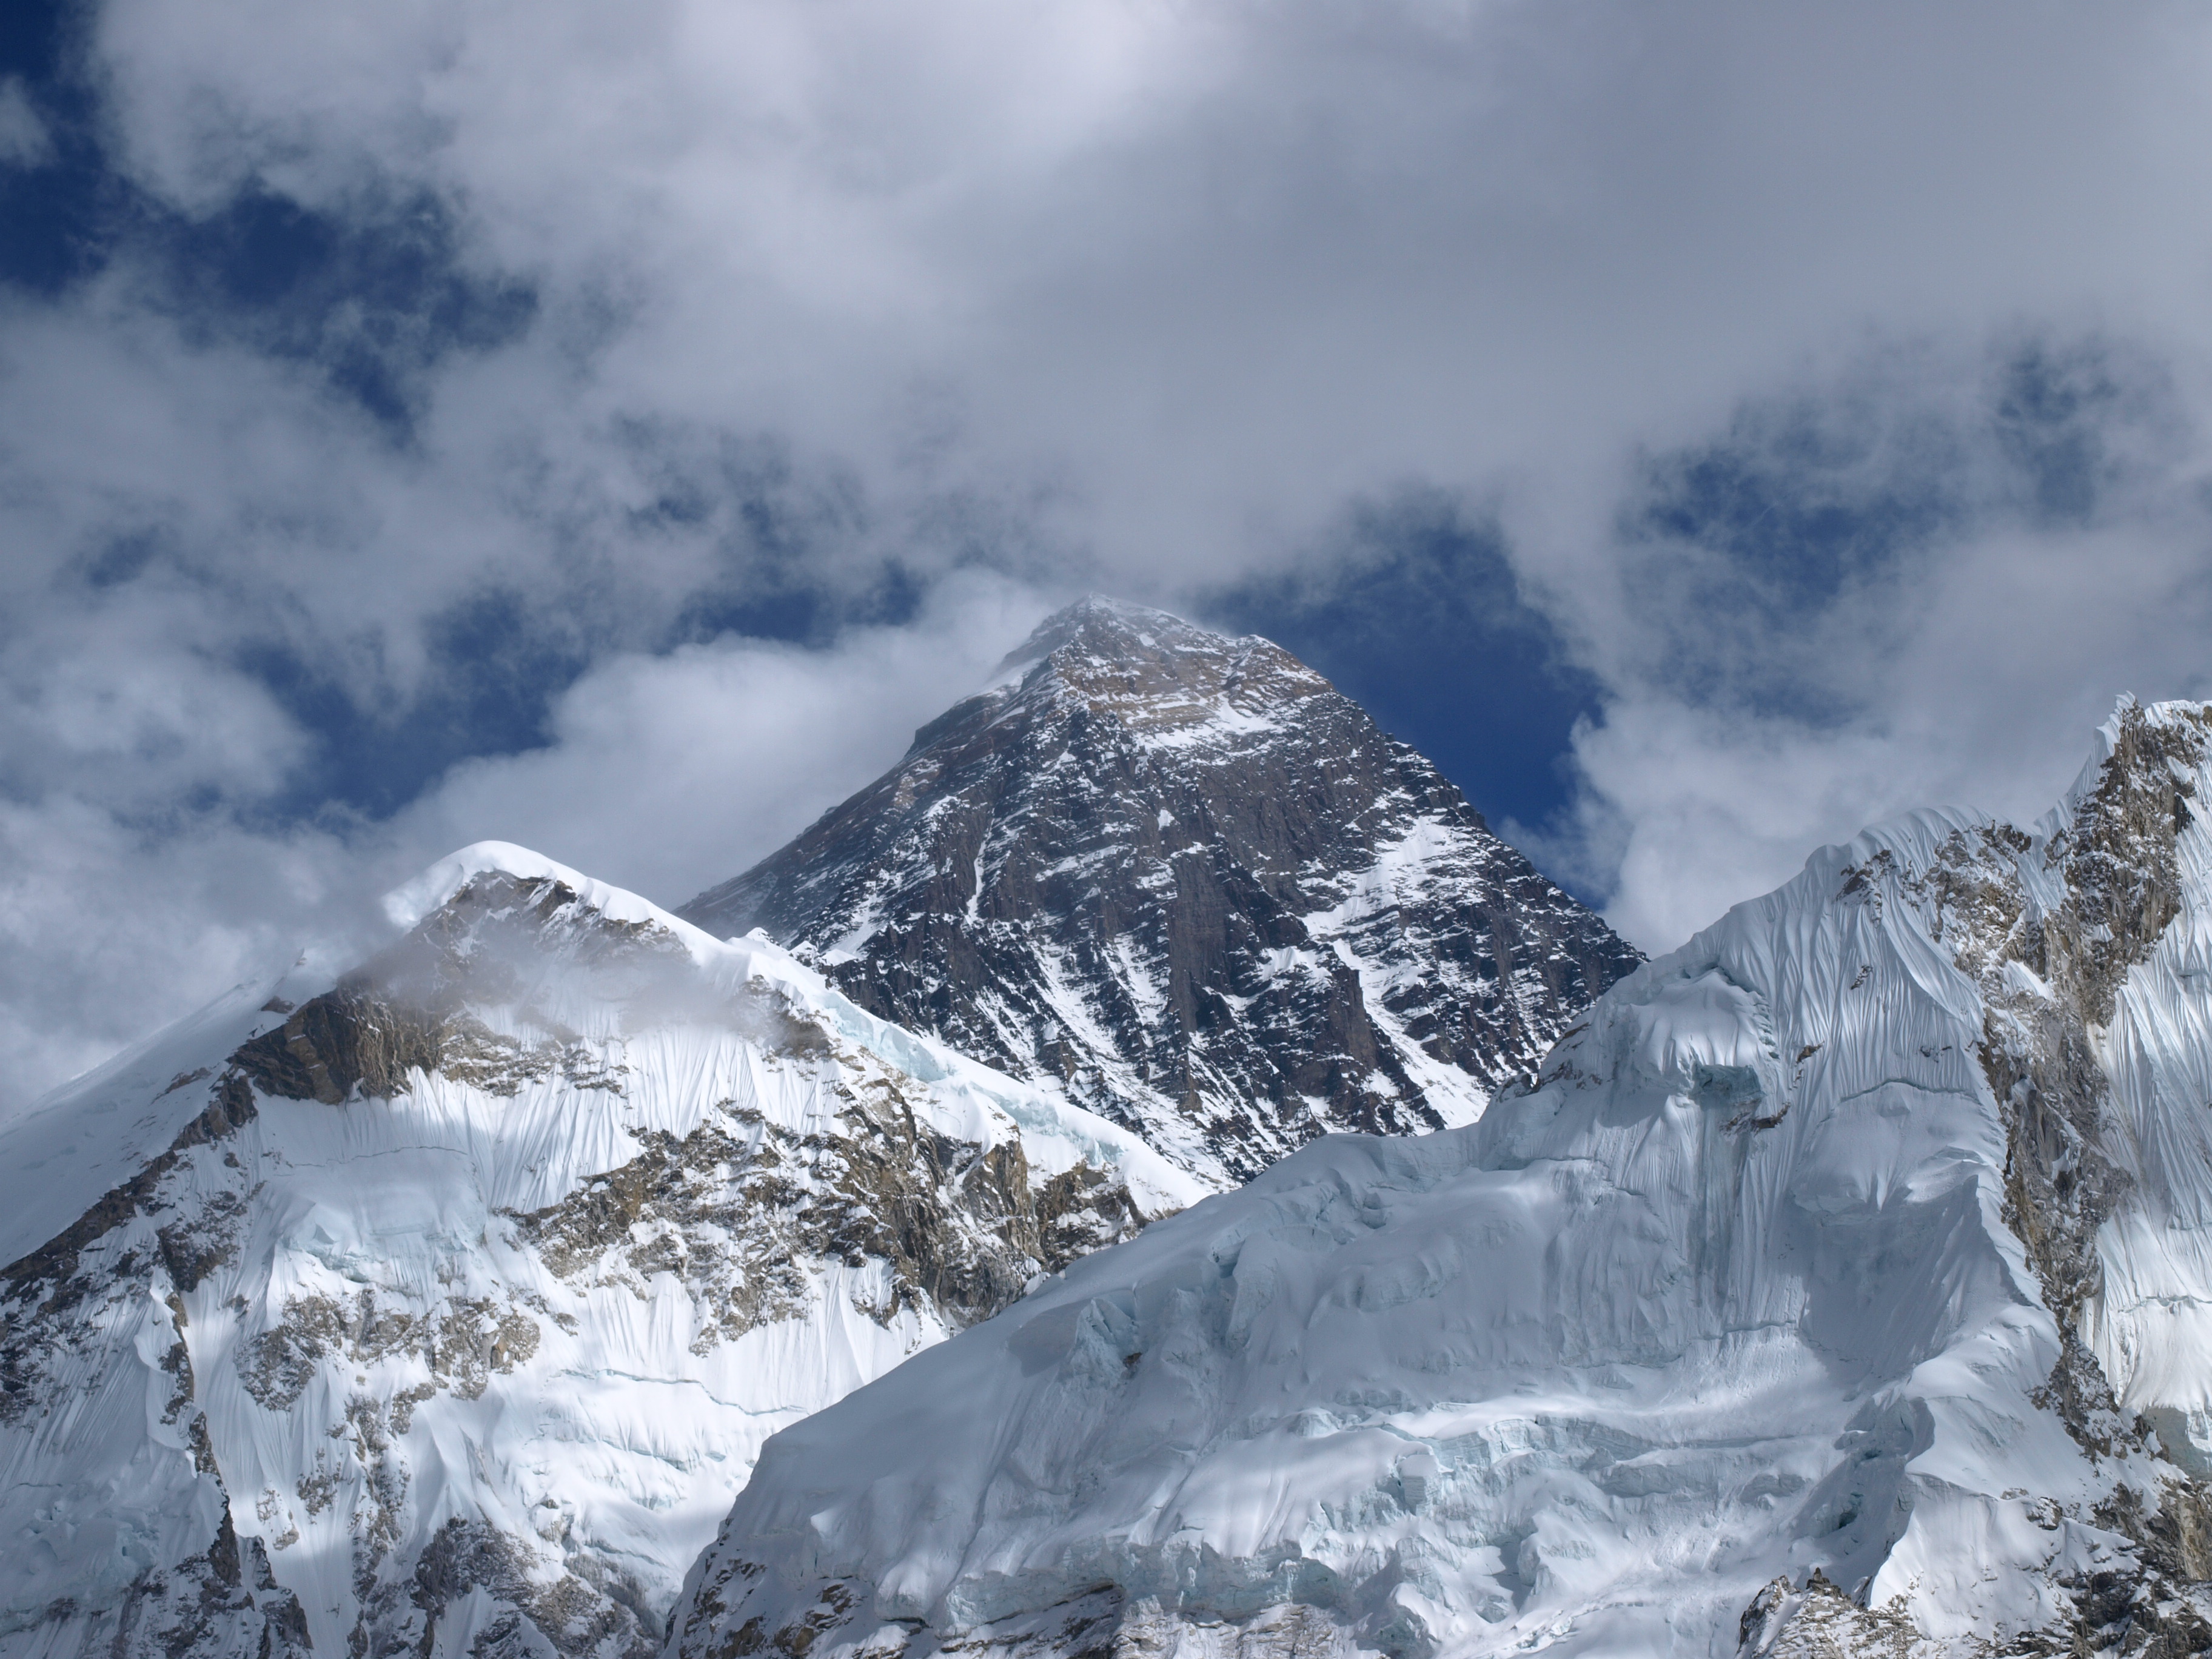 【エベレスト公募登山隊同行ツアー】カラパタール(5,545m)登頂とエベレストBC滞在 19日間